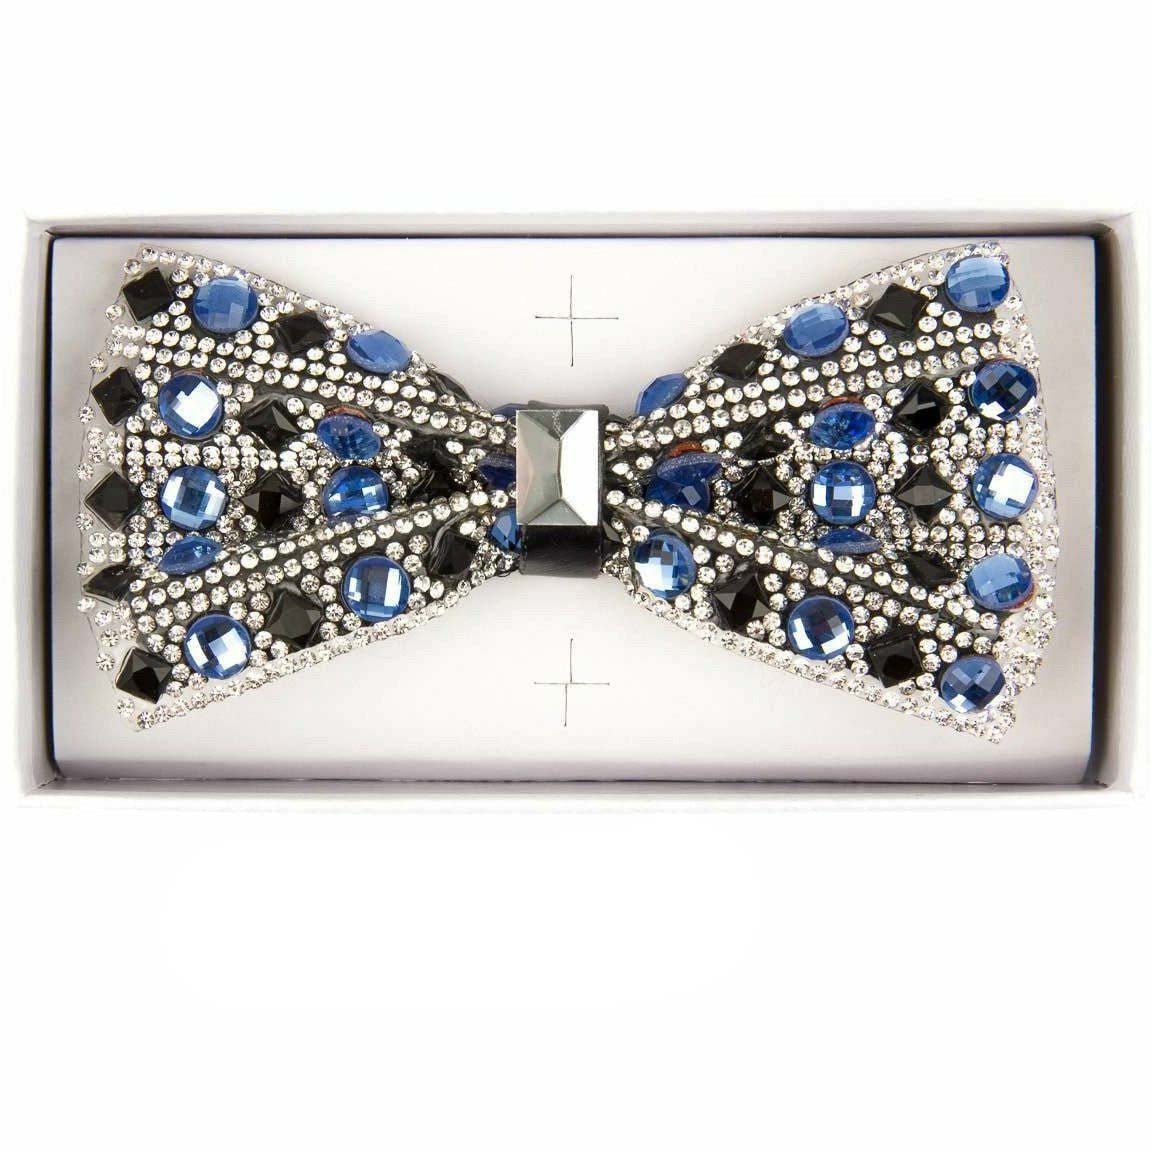 Vittorio Farina Jeweled Bow Tie by Classy Cufflinks - bj-05 - Classy Cufflinks